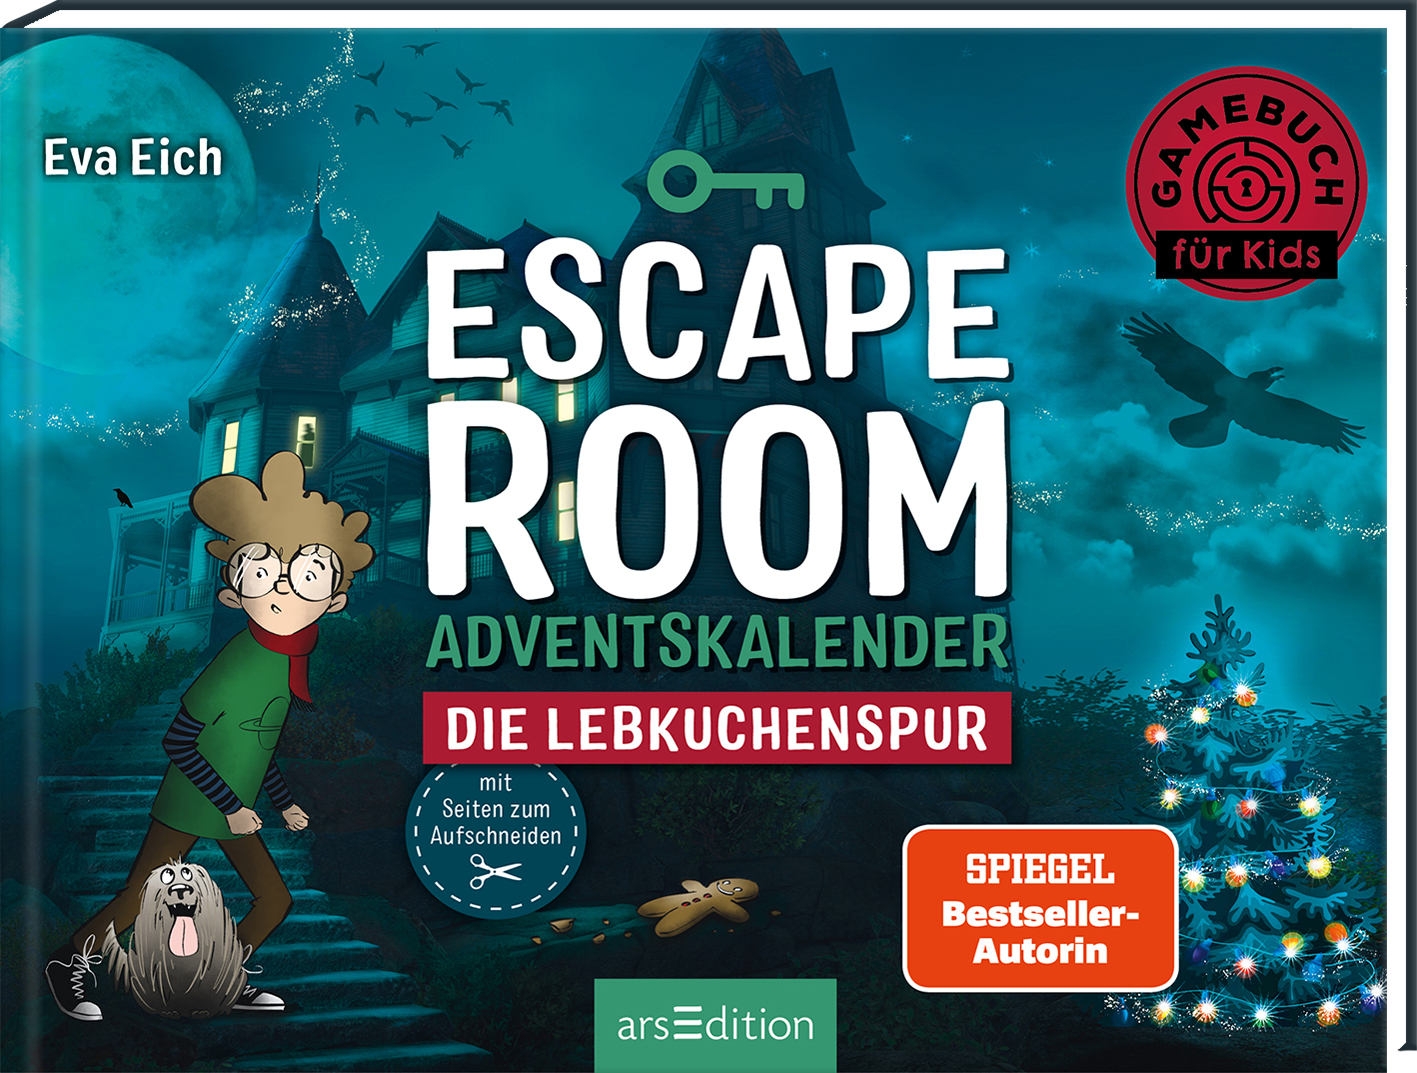 ARS EDITION Adventskalender Escape Room 134918 Die Lebkuchenspur Die Lebkuchenspur